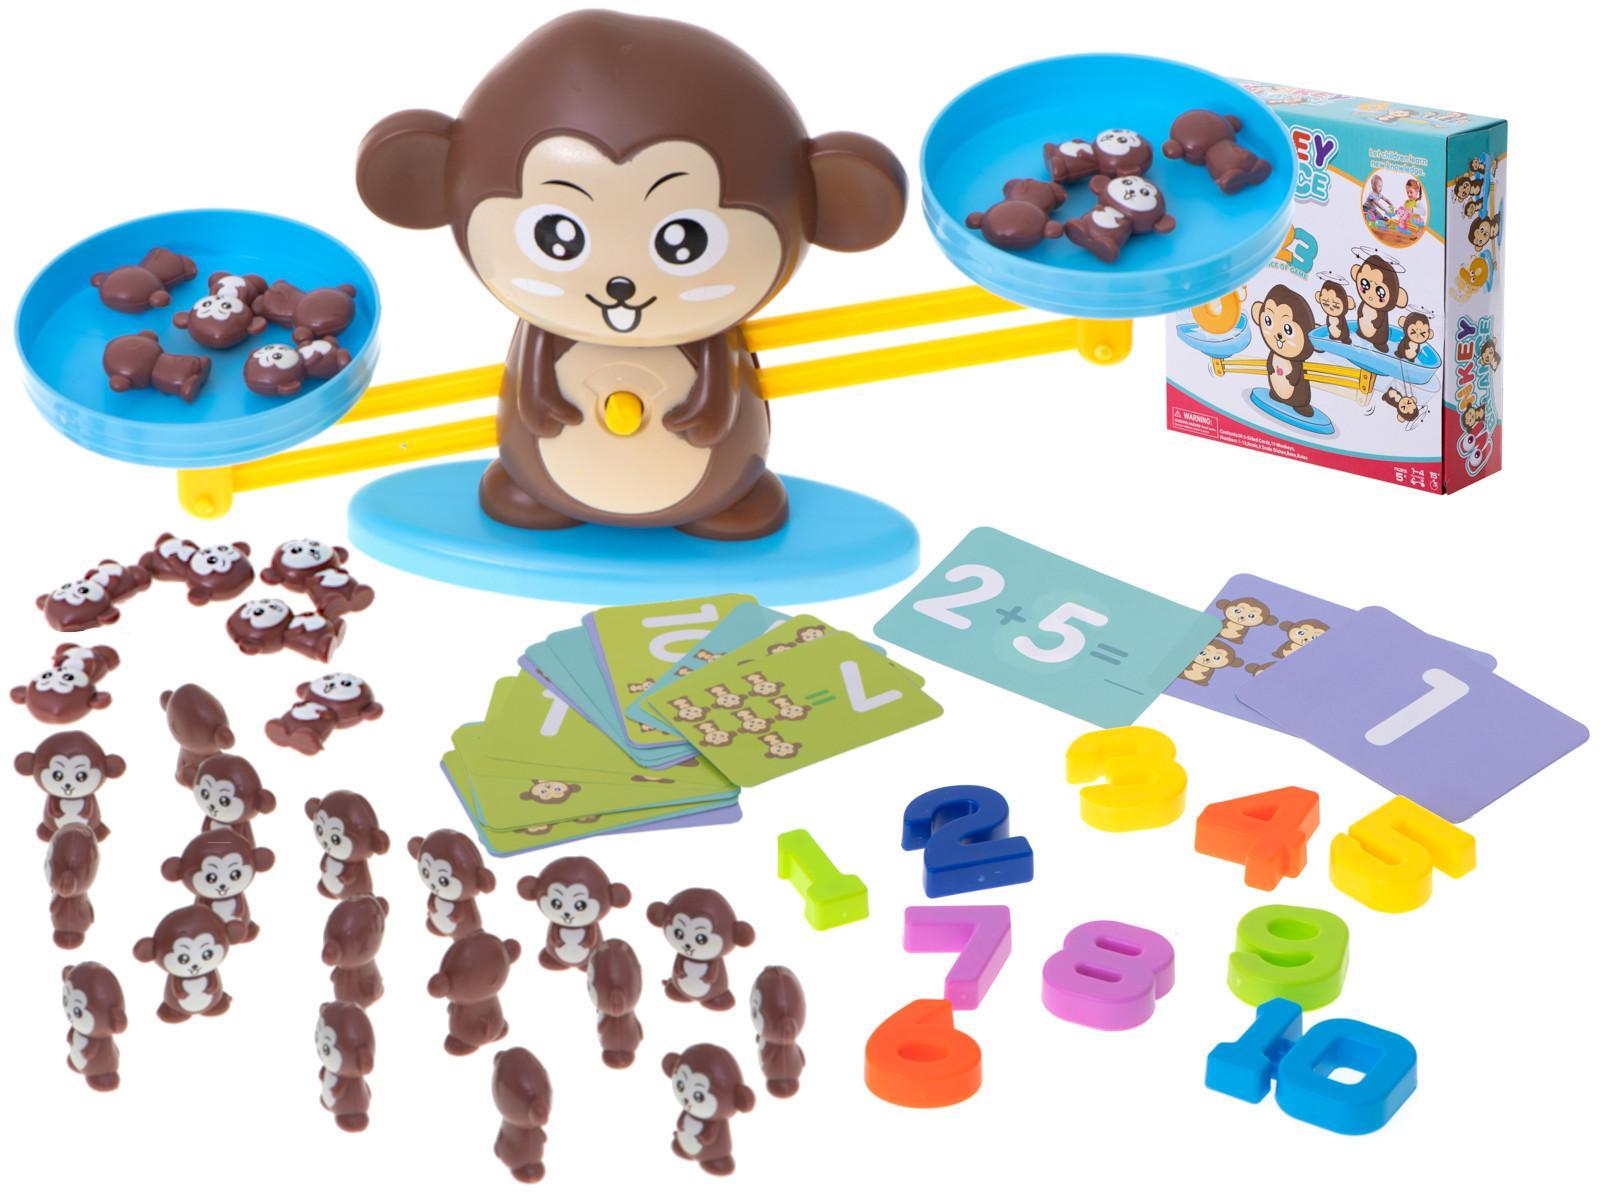 Waga szalkowa edukacyjna nauka liczenia małpka duża dla dzieci 34,5x9,5x8 cm 6 Full Screen